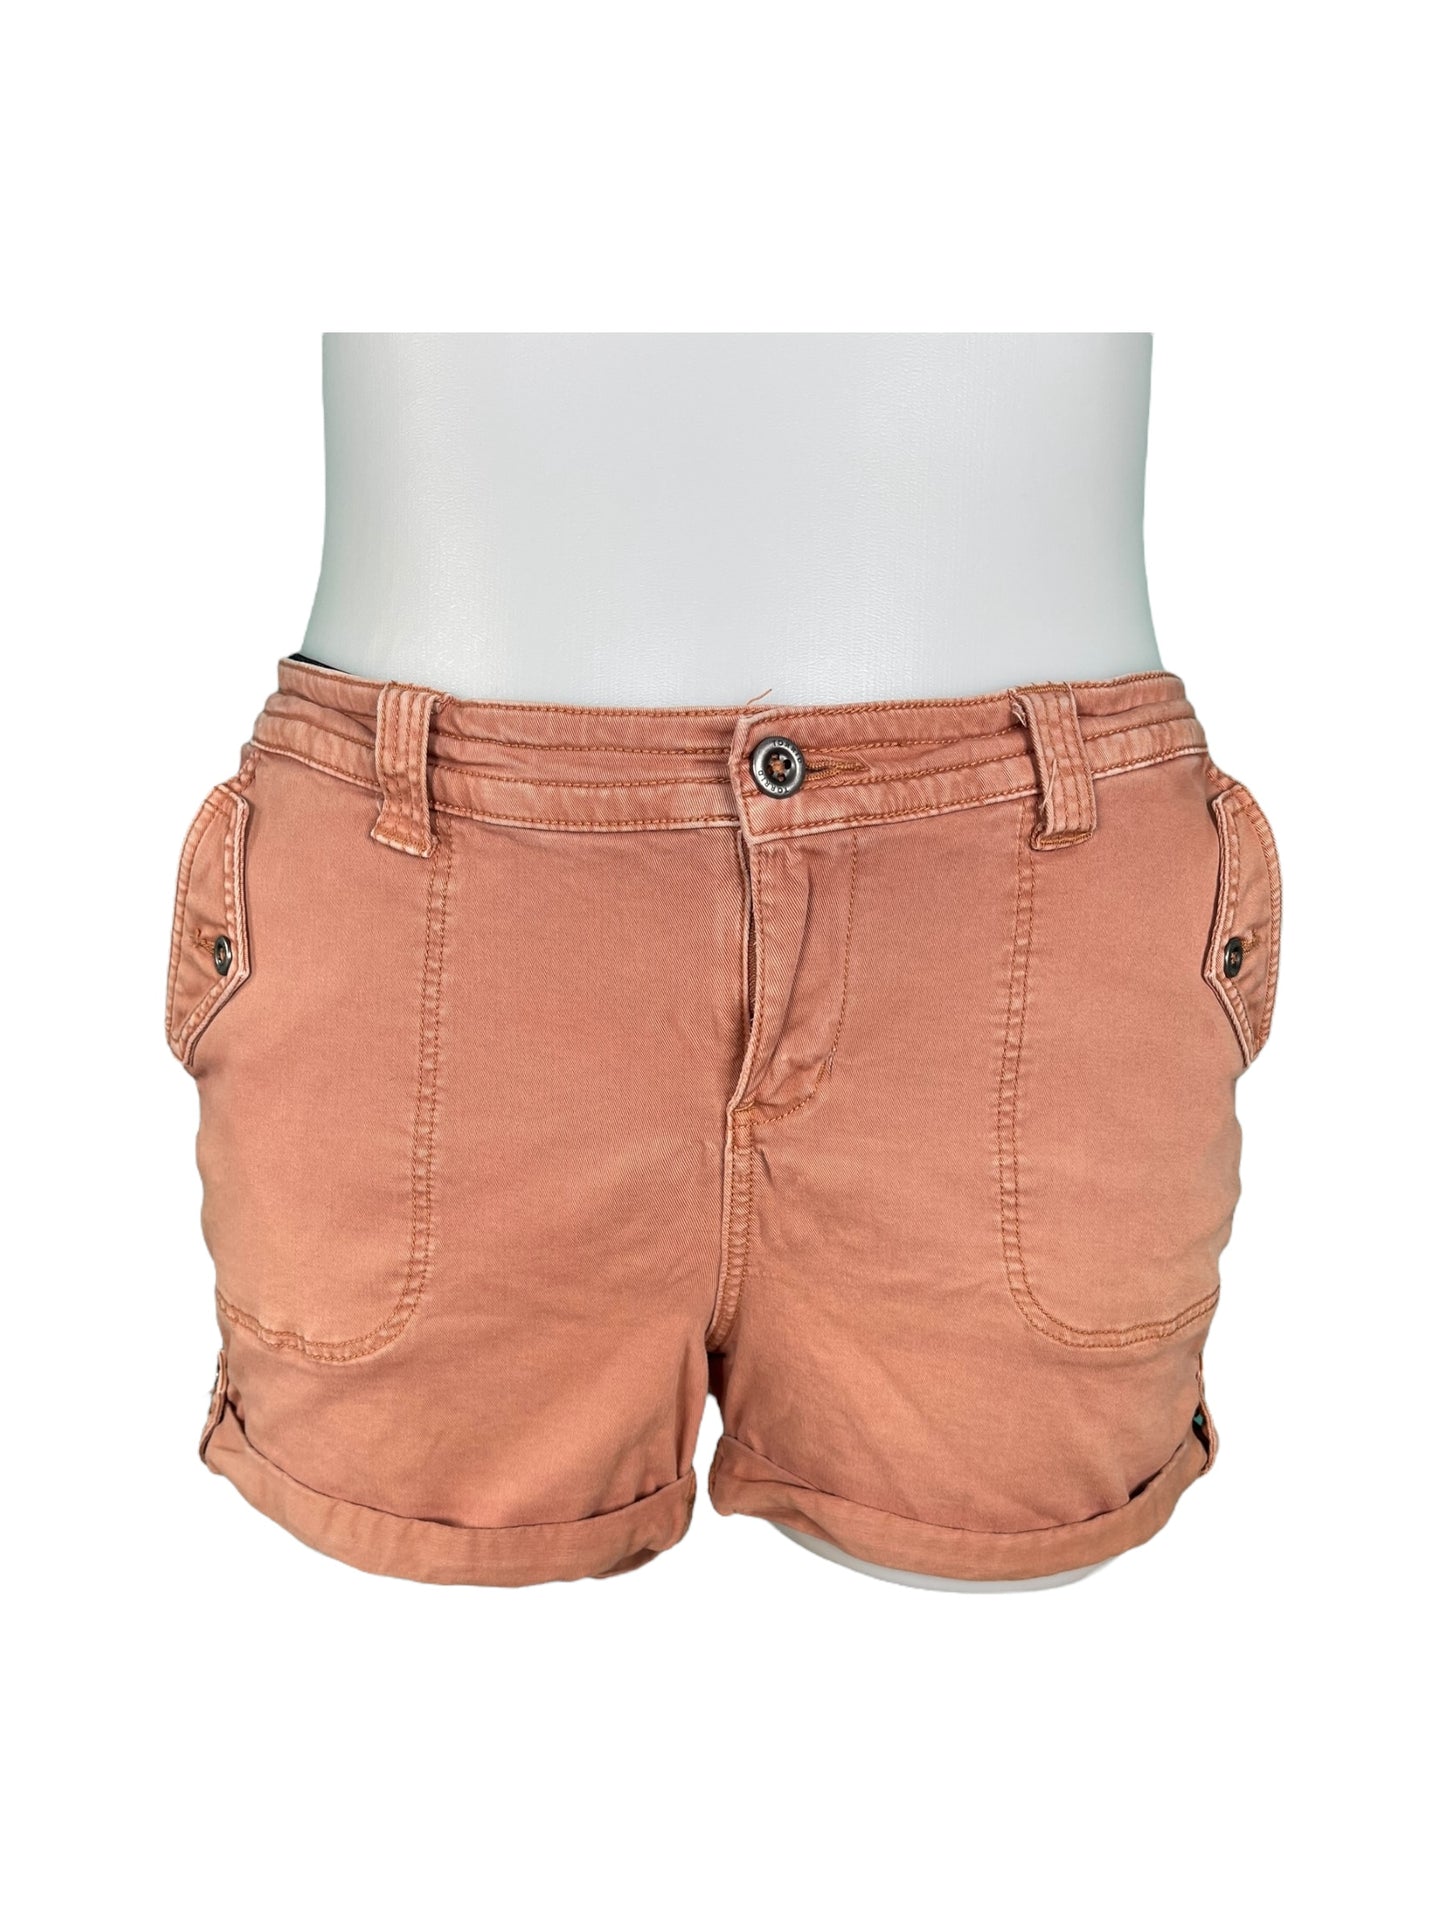 Coral Shorts (20)